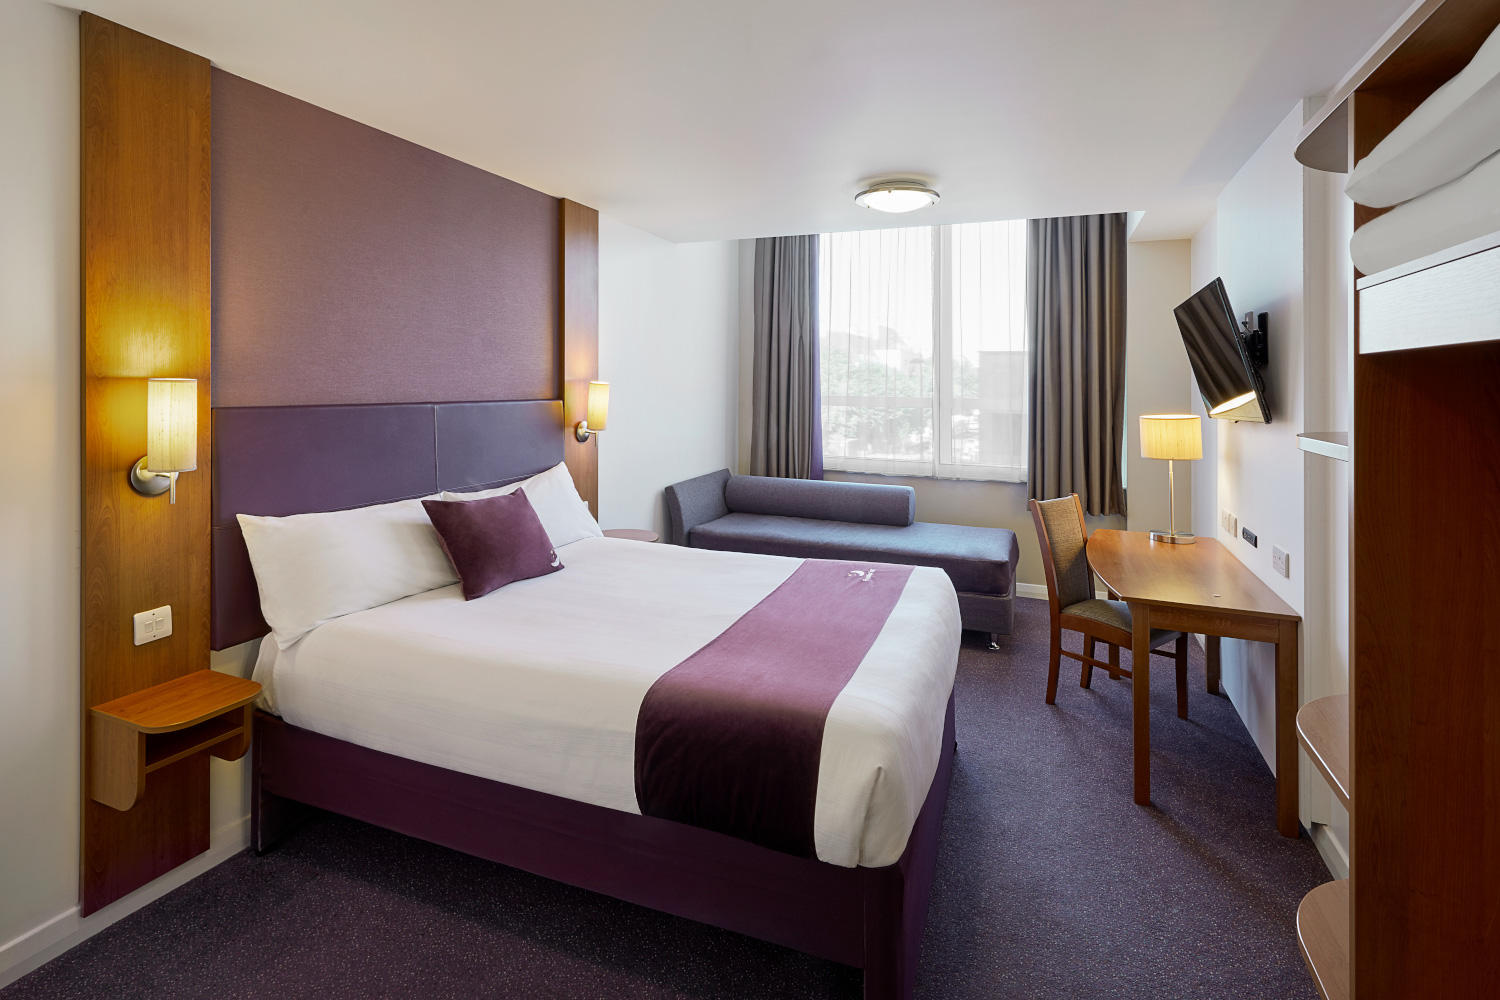 Premier Inn bedroom Premier Inn Caerphilly (Corbetts Lane) hotel Caerphilly 03337 773973